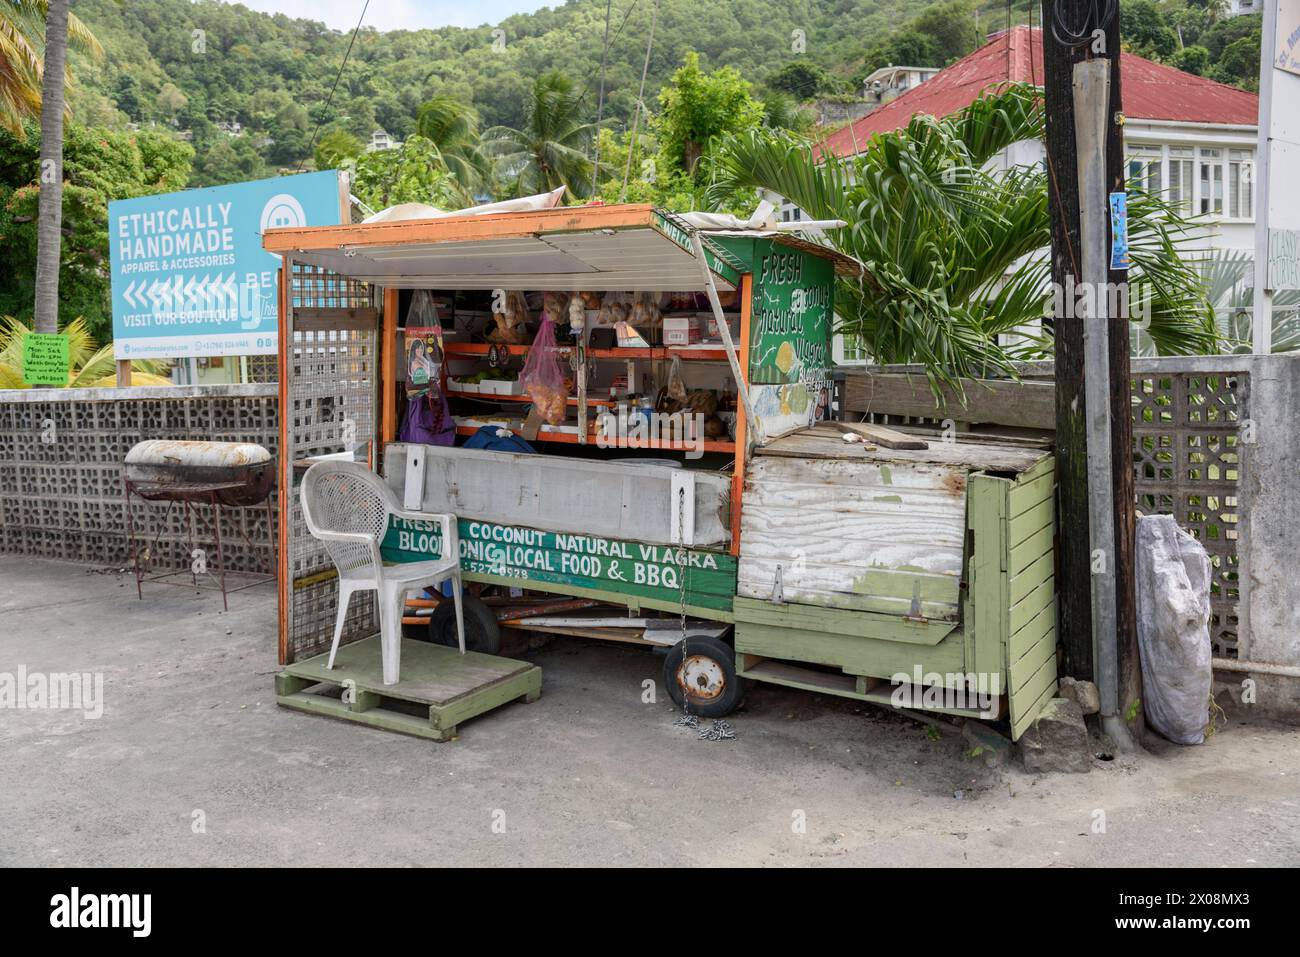 Stand de nourriture vendant des noix de coco fraîches à Port Elizabeth, Bequia Island, St Vincent et les Grenadines, Caraïbes Banque D'Images